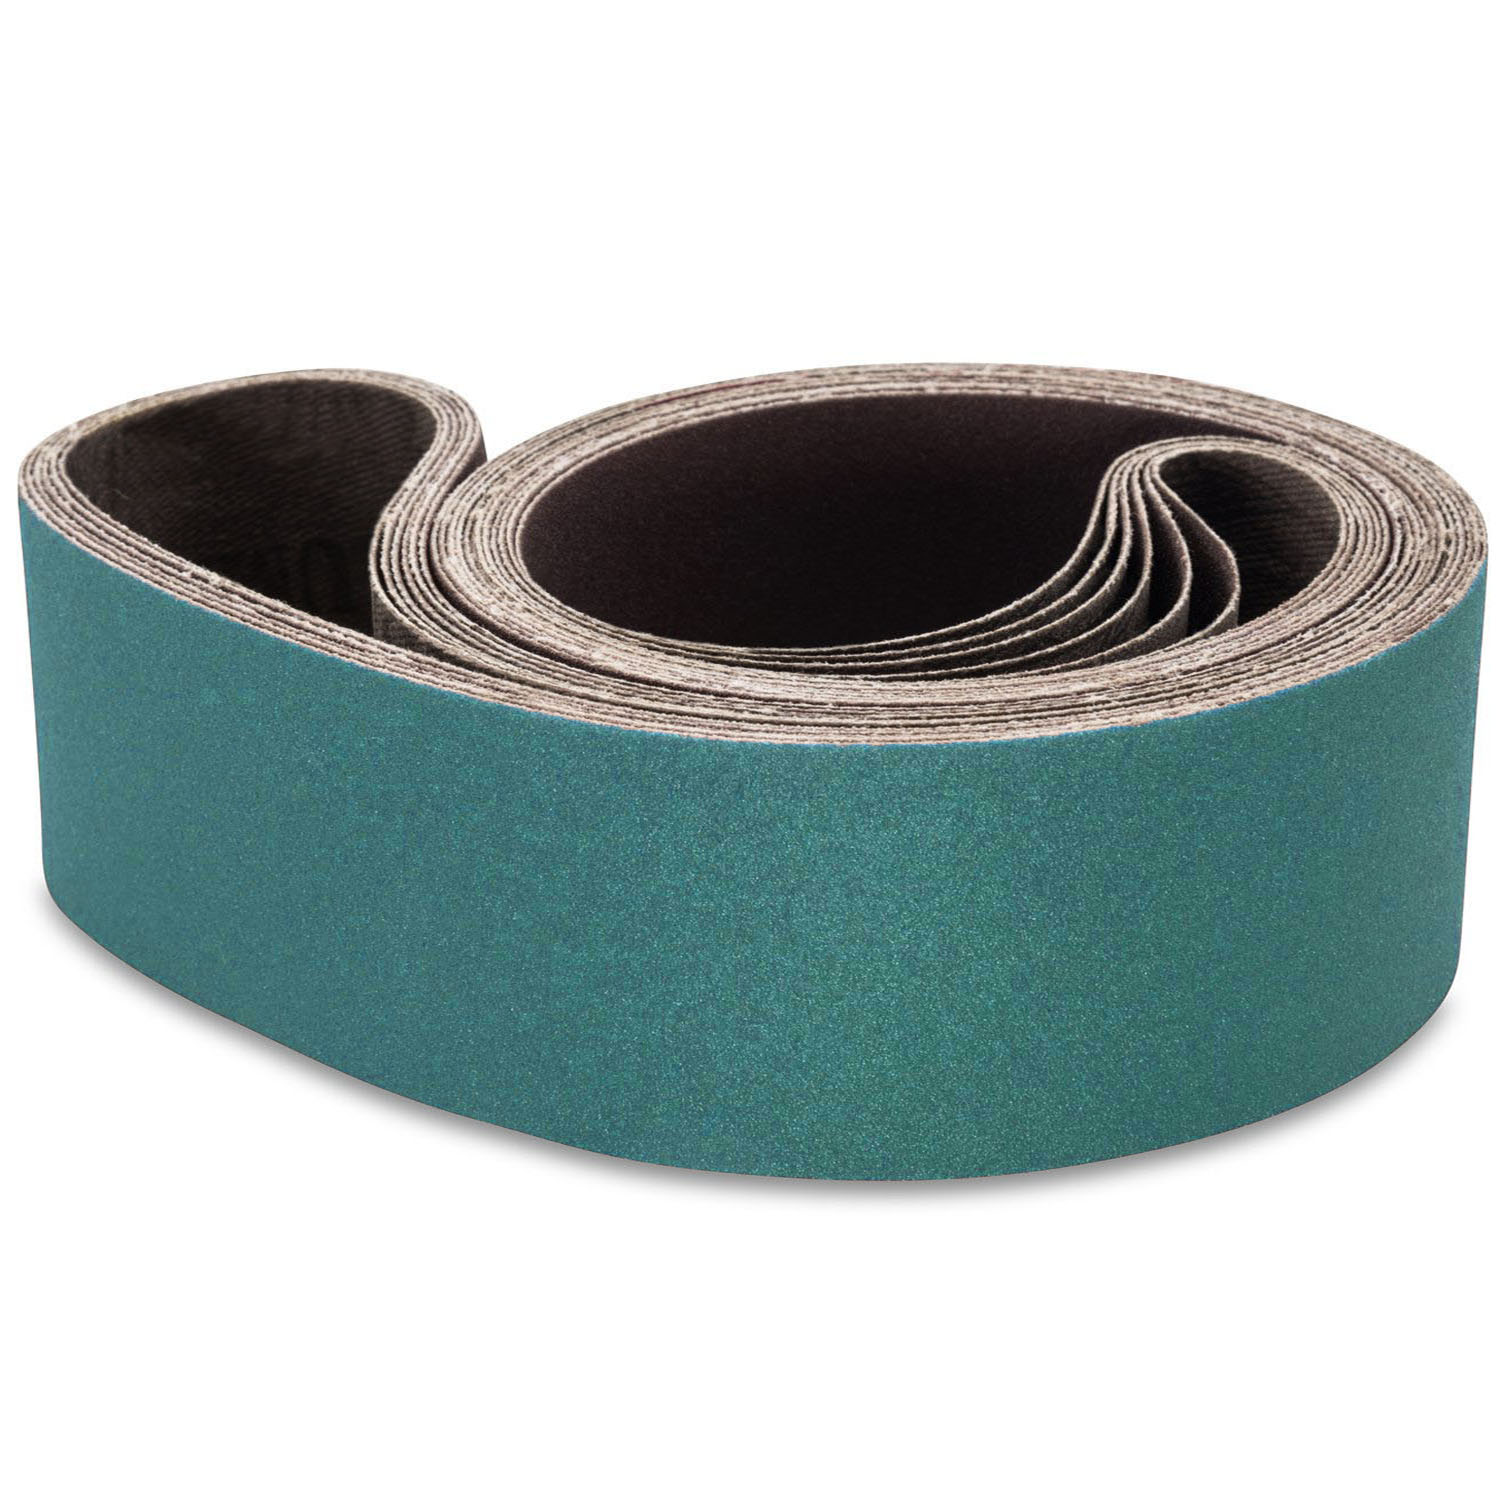 2 Pack 6 X 48 Inch 80 Grit Metal Grinding Zirconia Sanding Belts